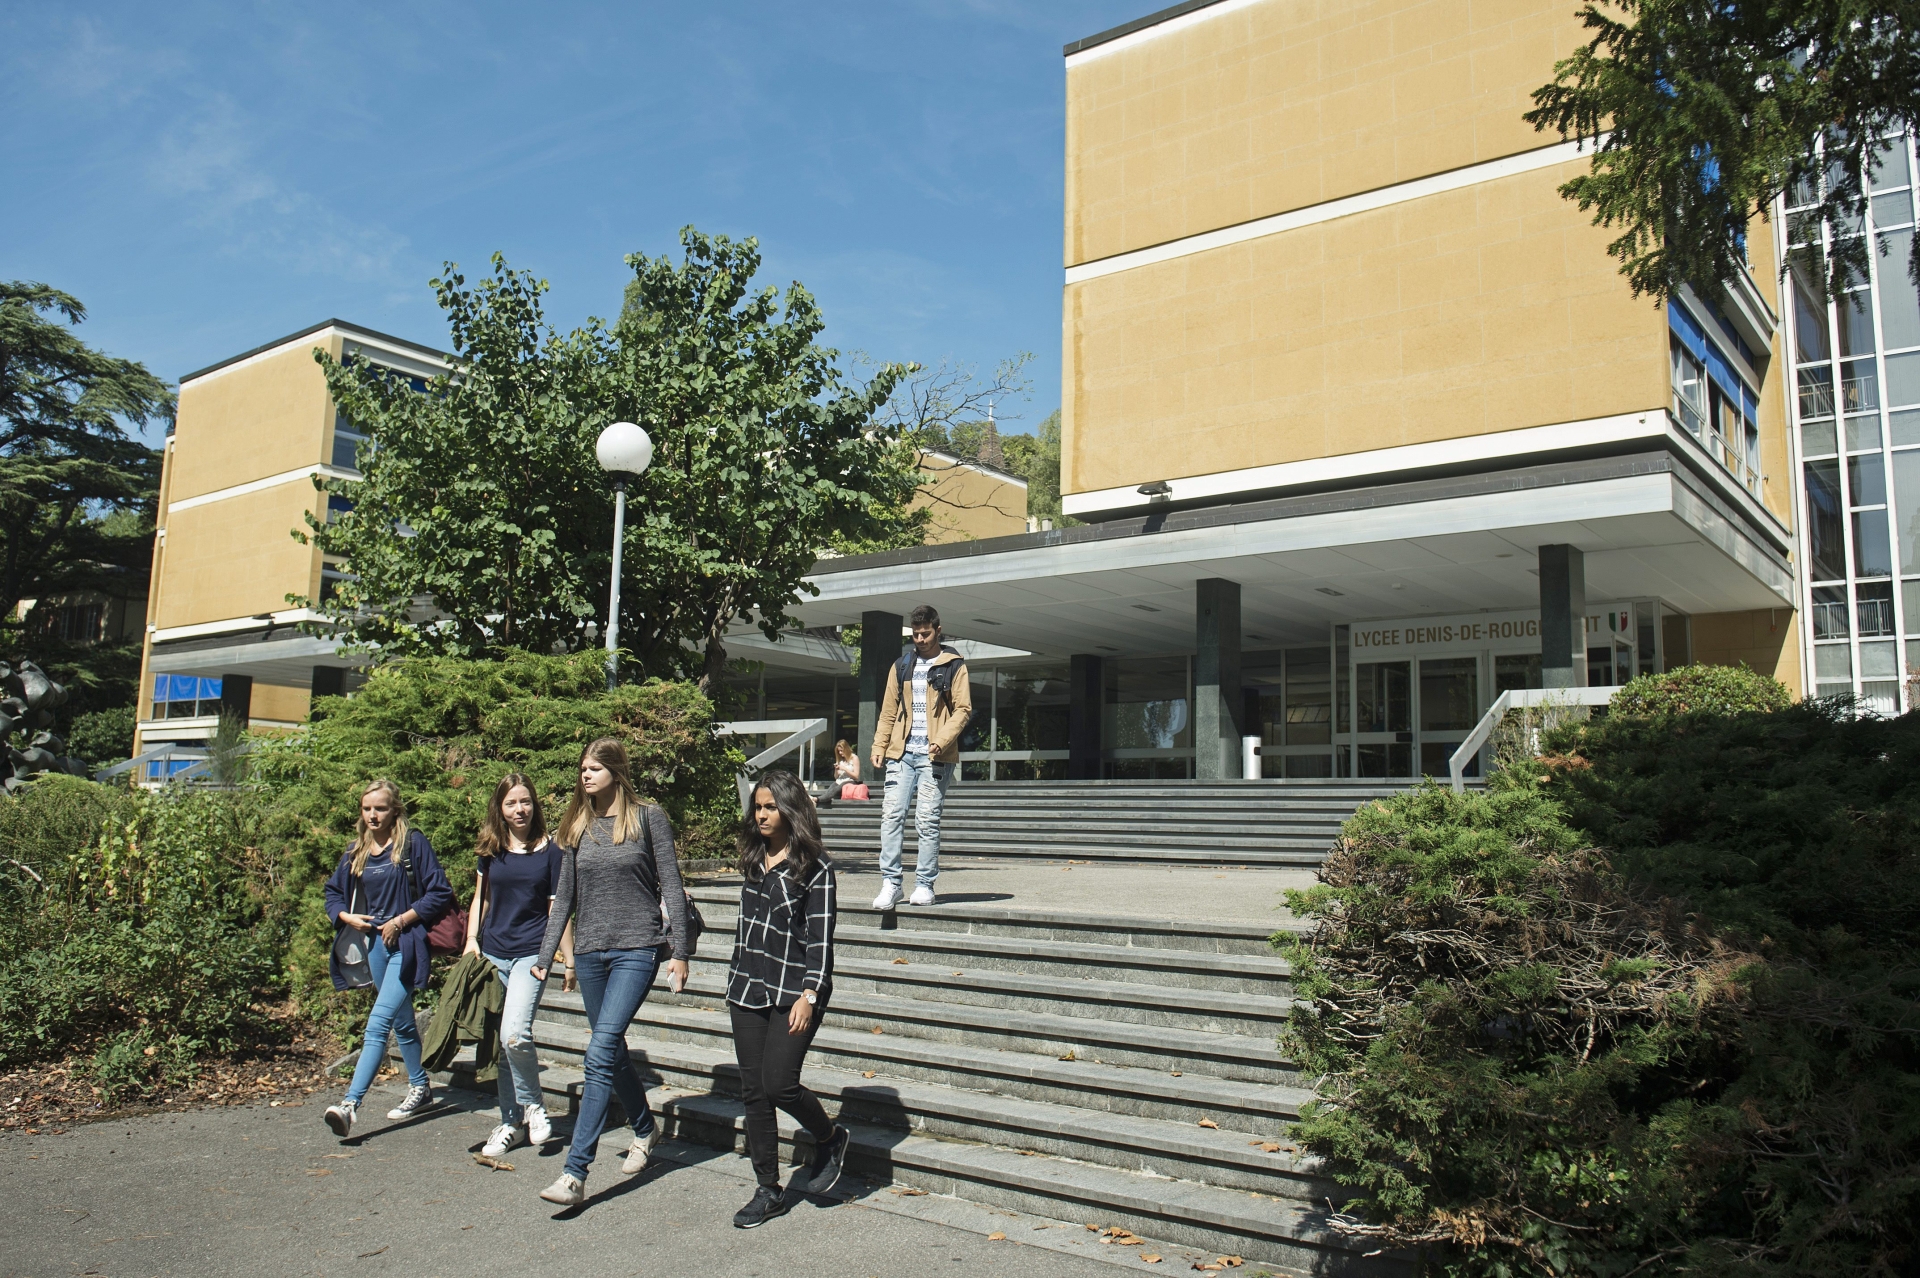 Les lycéens neuchâtelois (ici au lycée Denis-de-Rougemont) pourront effectuer des échanges linguistiques dans le canton de Schwytz.